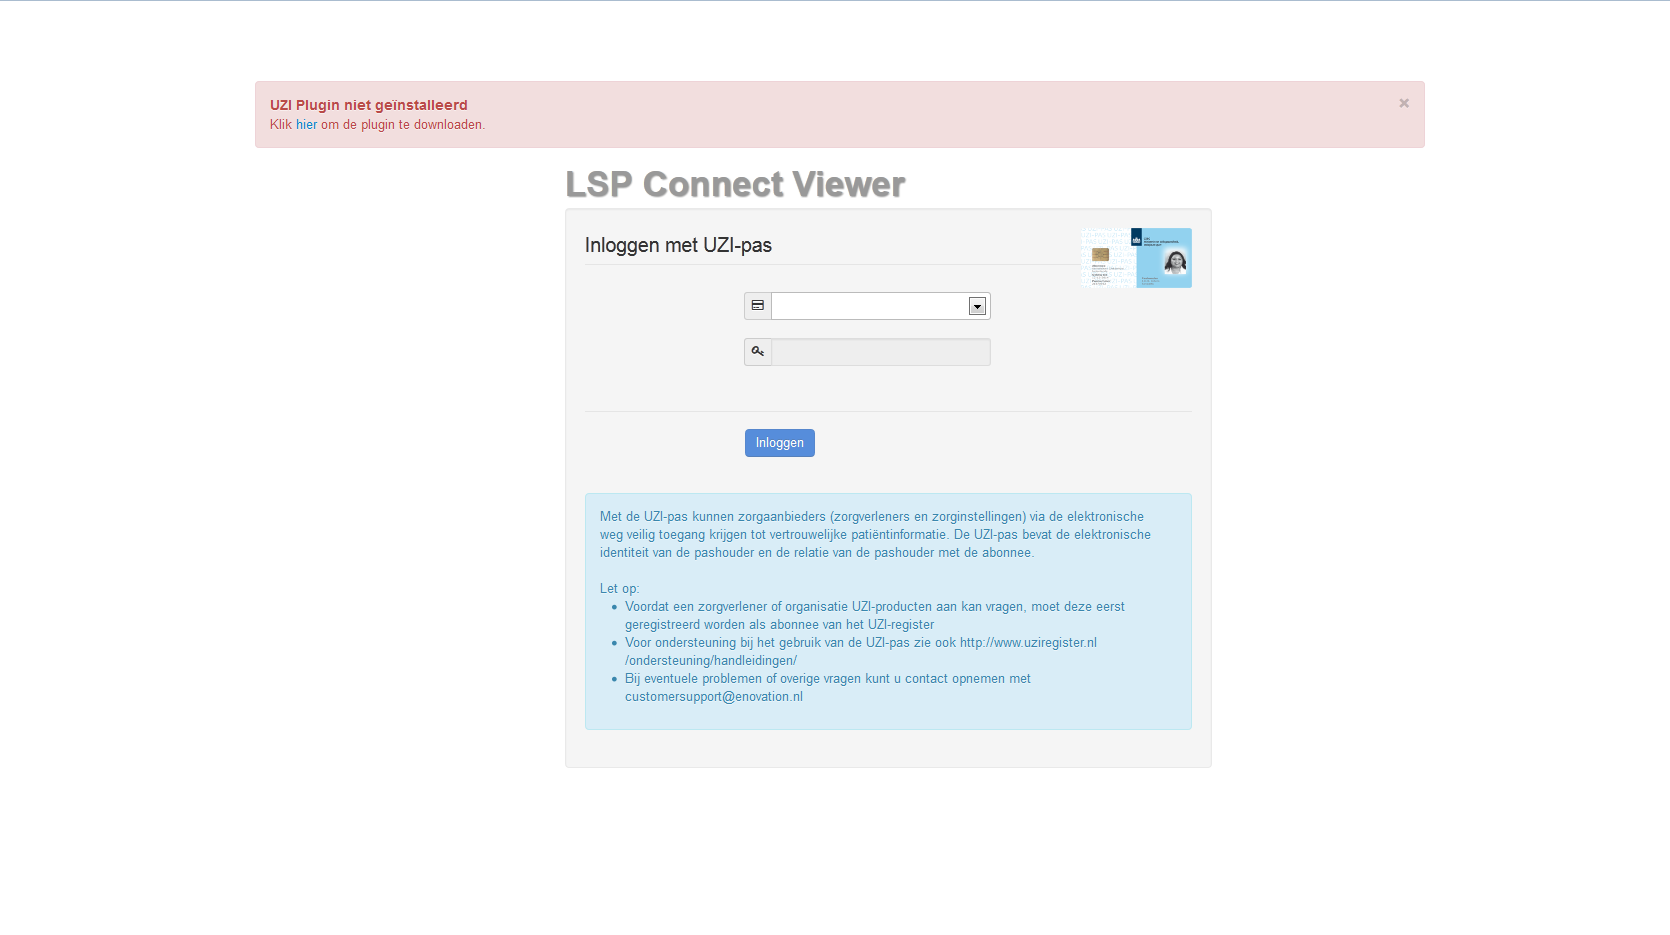 2.1 Browsers De LSP Connect Viewer maakt gebruik van een browser-plugin. Bij eerste gebruik zal een melding worden gegeven dat deze plugin nog niet is geïnstalleerd.